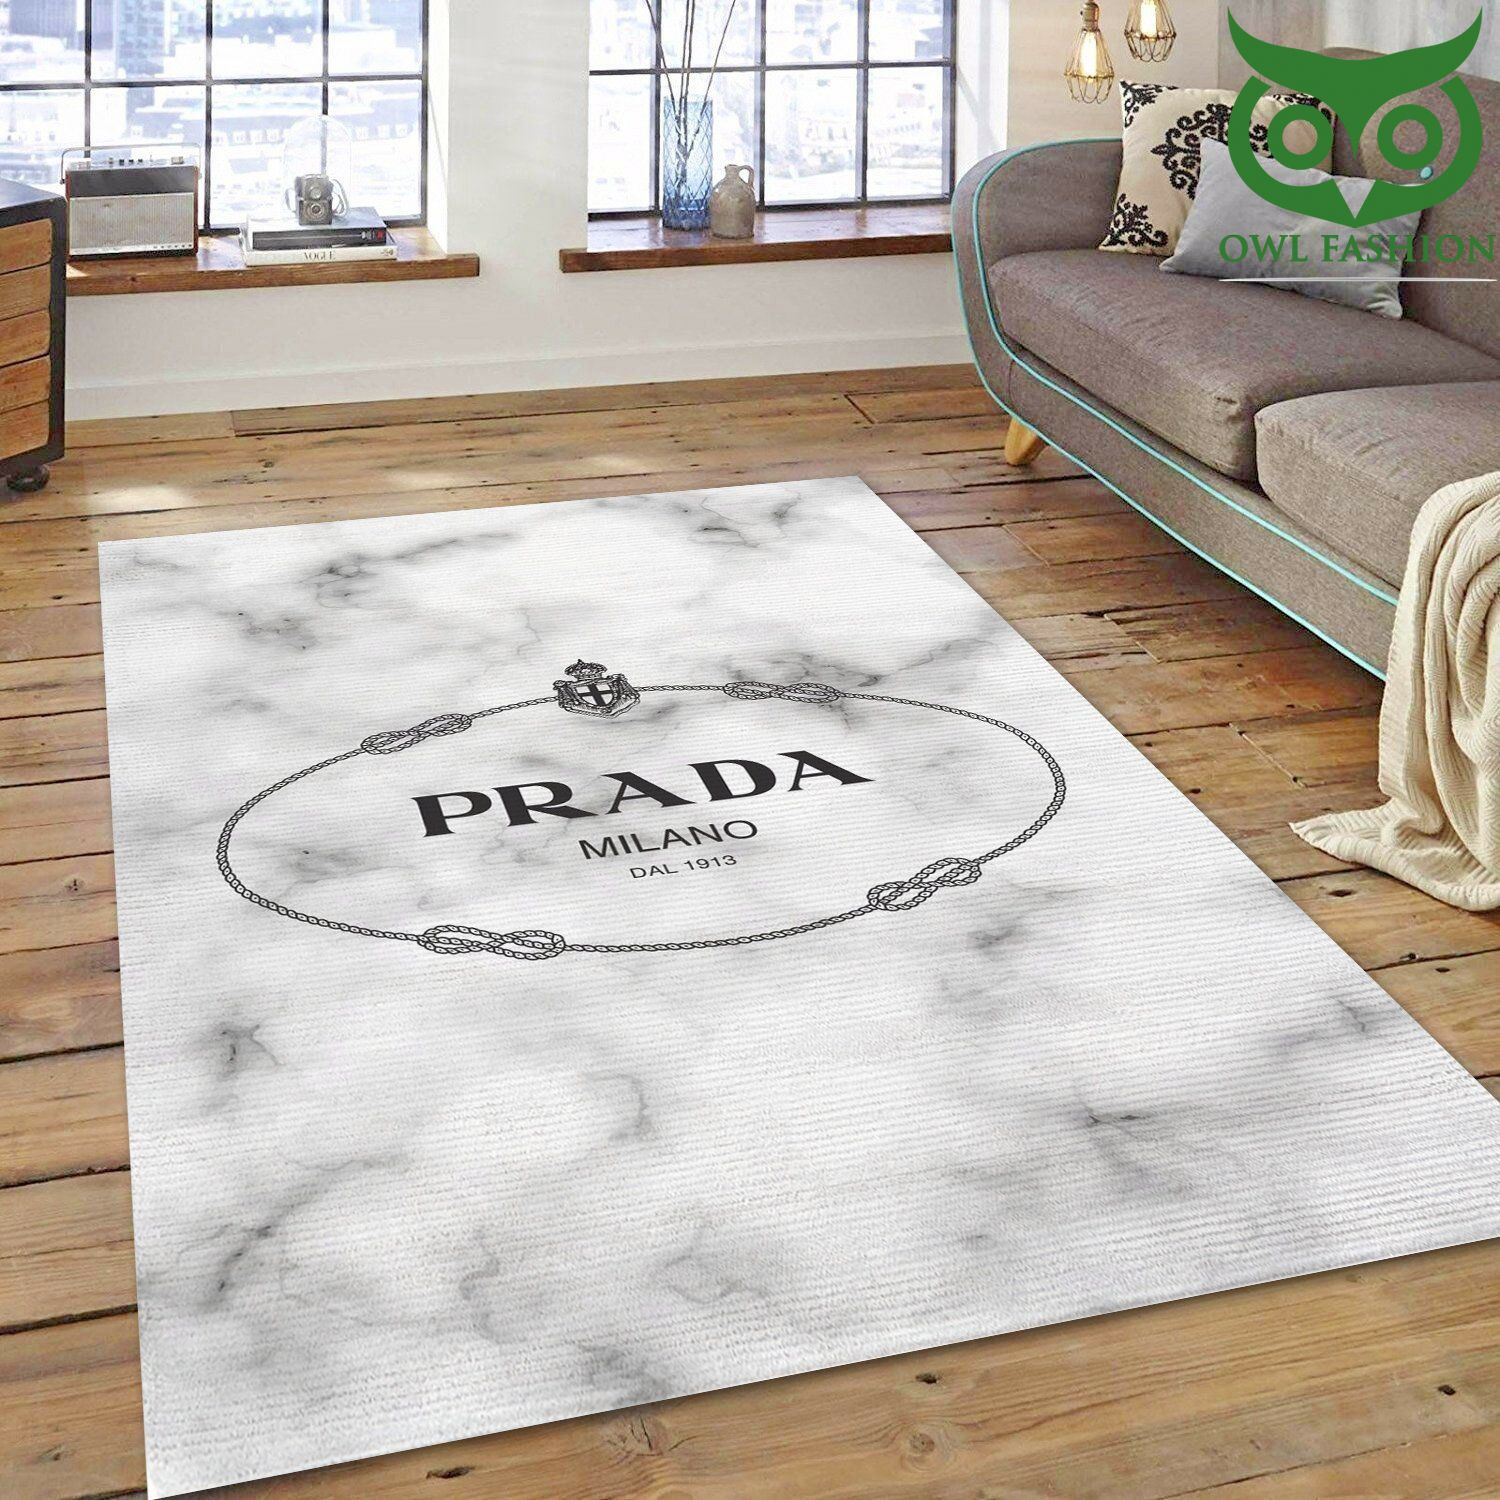 Prada Art room decorate floor carpet rug 